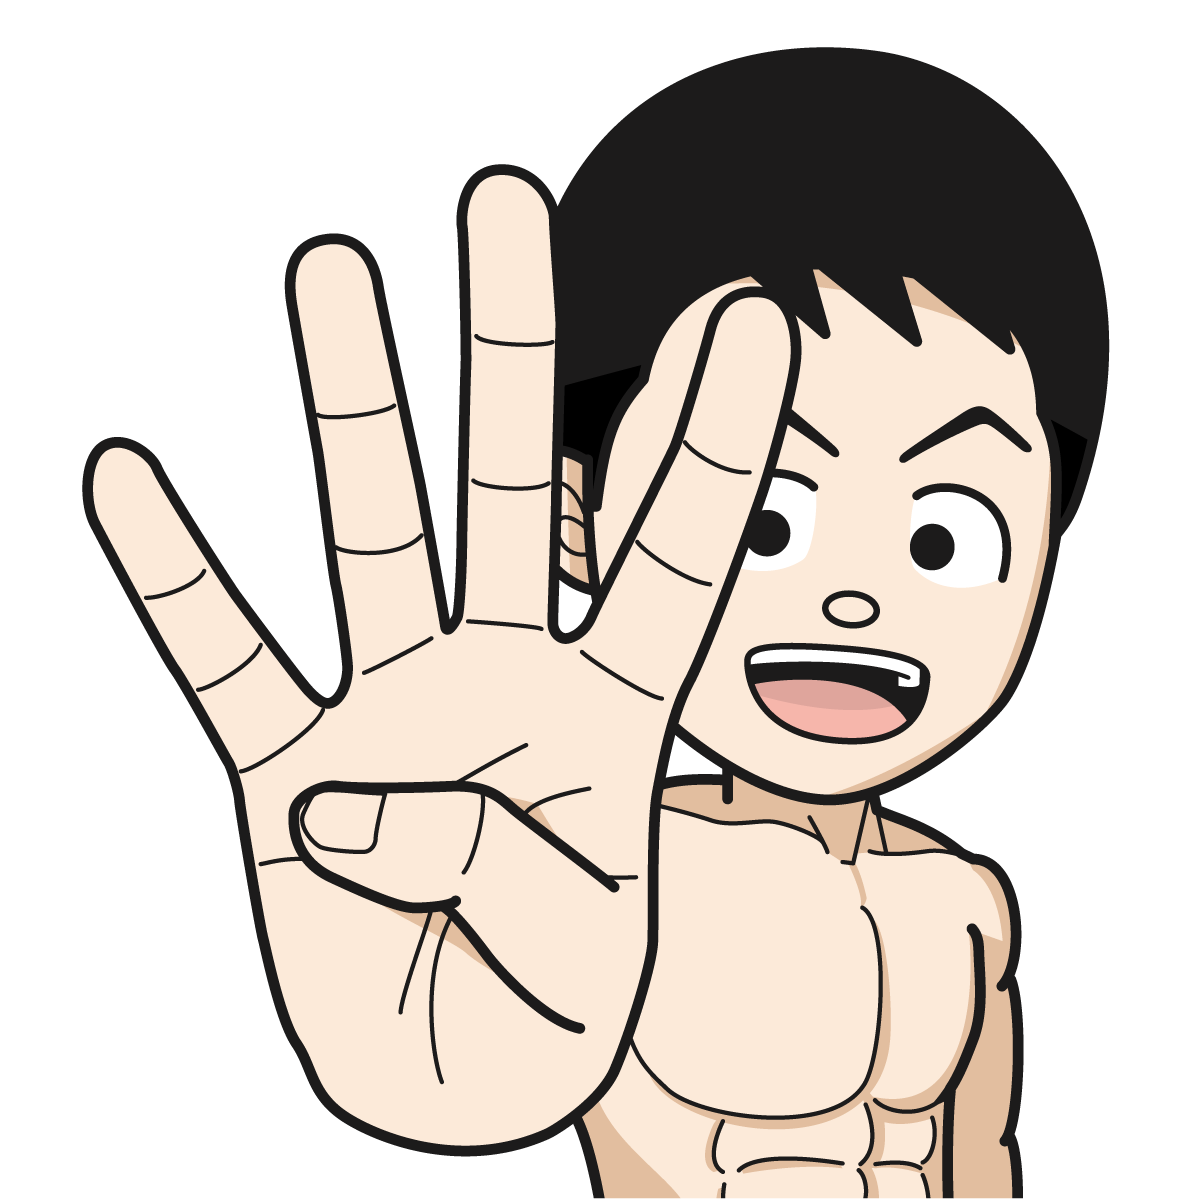 指で「4」を作るマッチョな裸姿の男性hand_19_イラスト